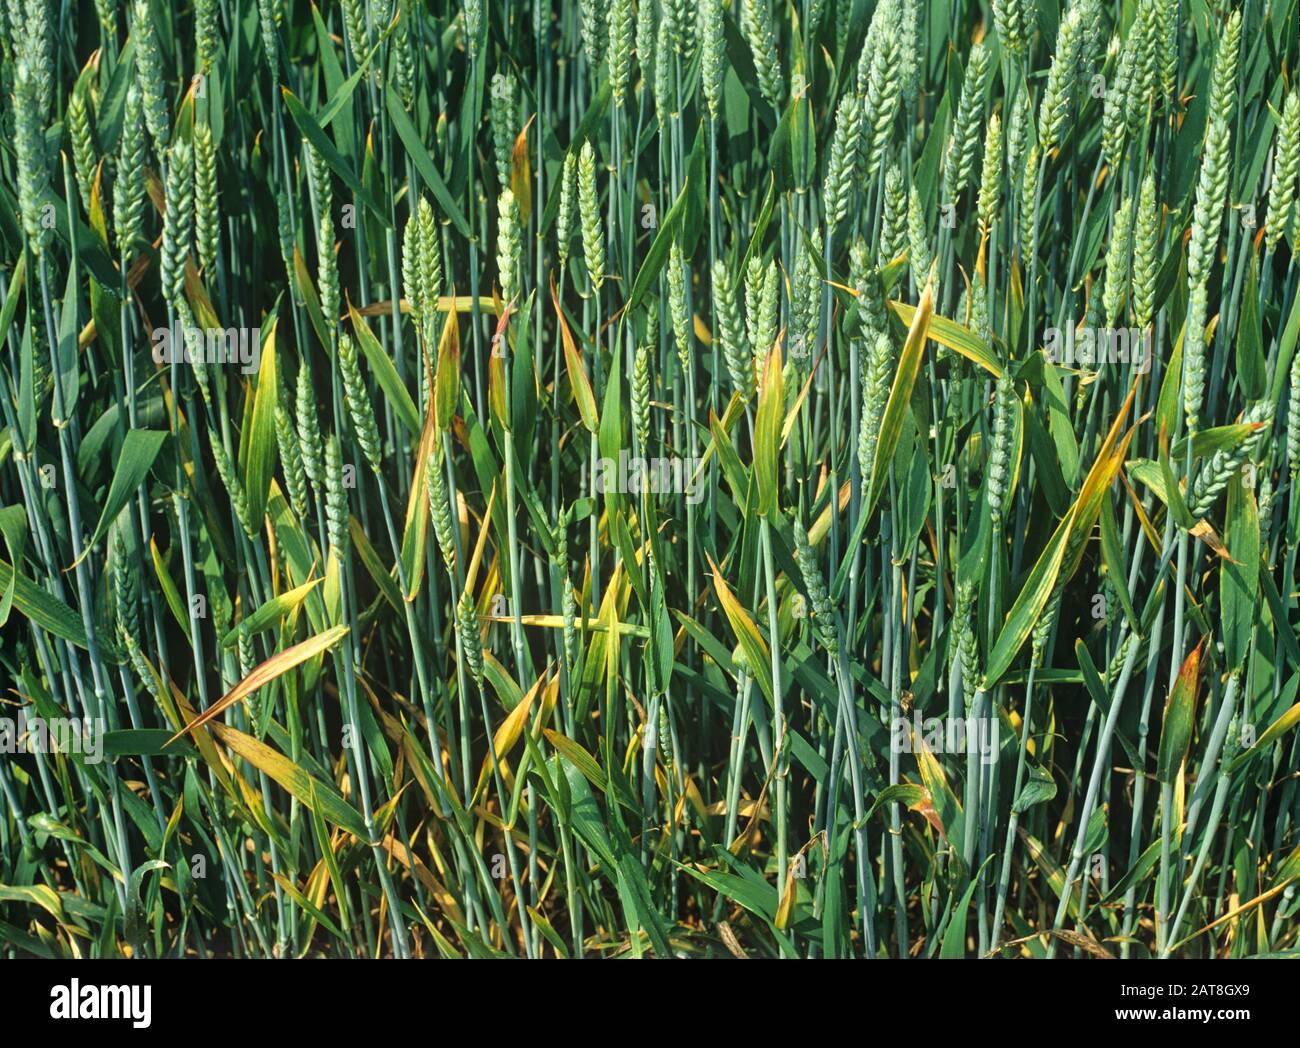 Enfoque de la infección de BYDV (virus enano amarillo de cebada) con los síntomas de clorisis y vuelco de las hojas en la maduración de la cosecha de trigo en el oído Foto de stock